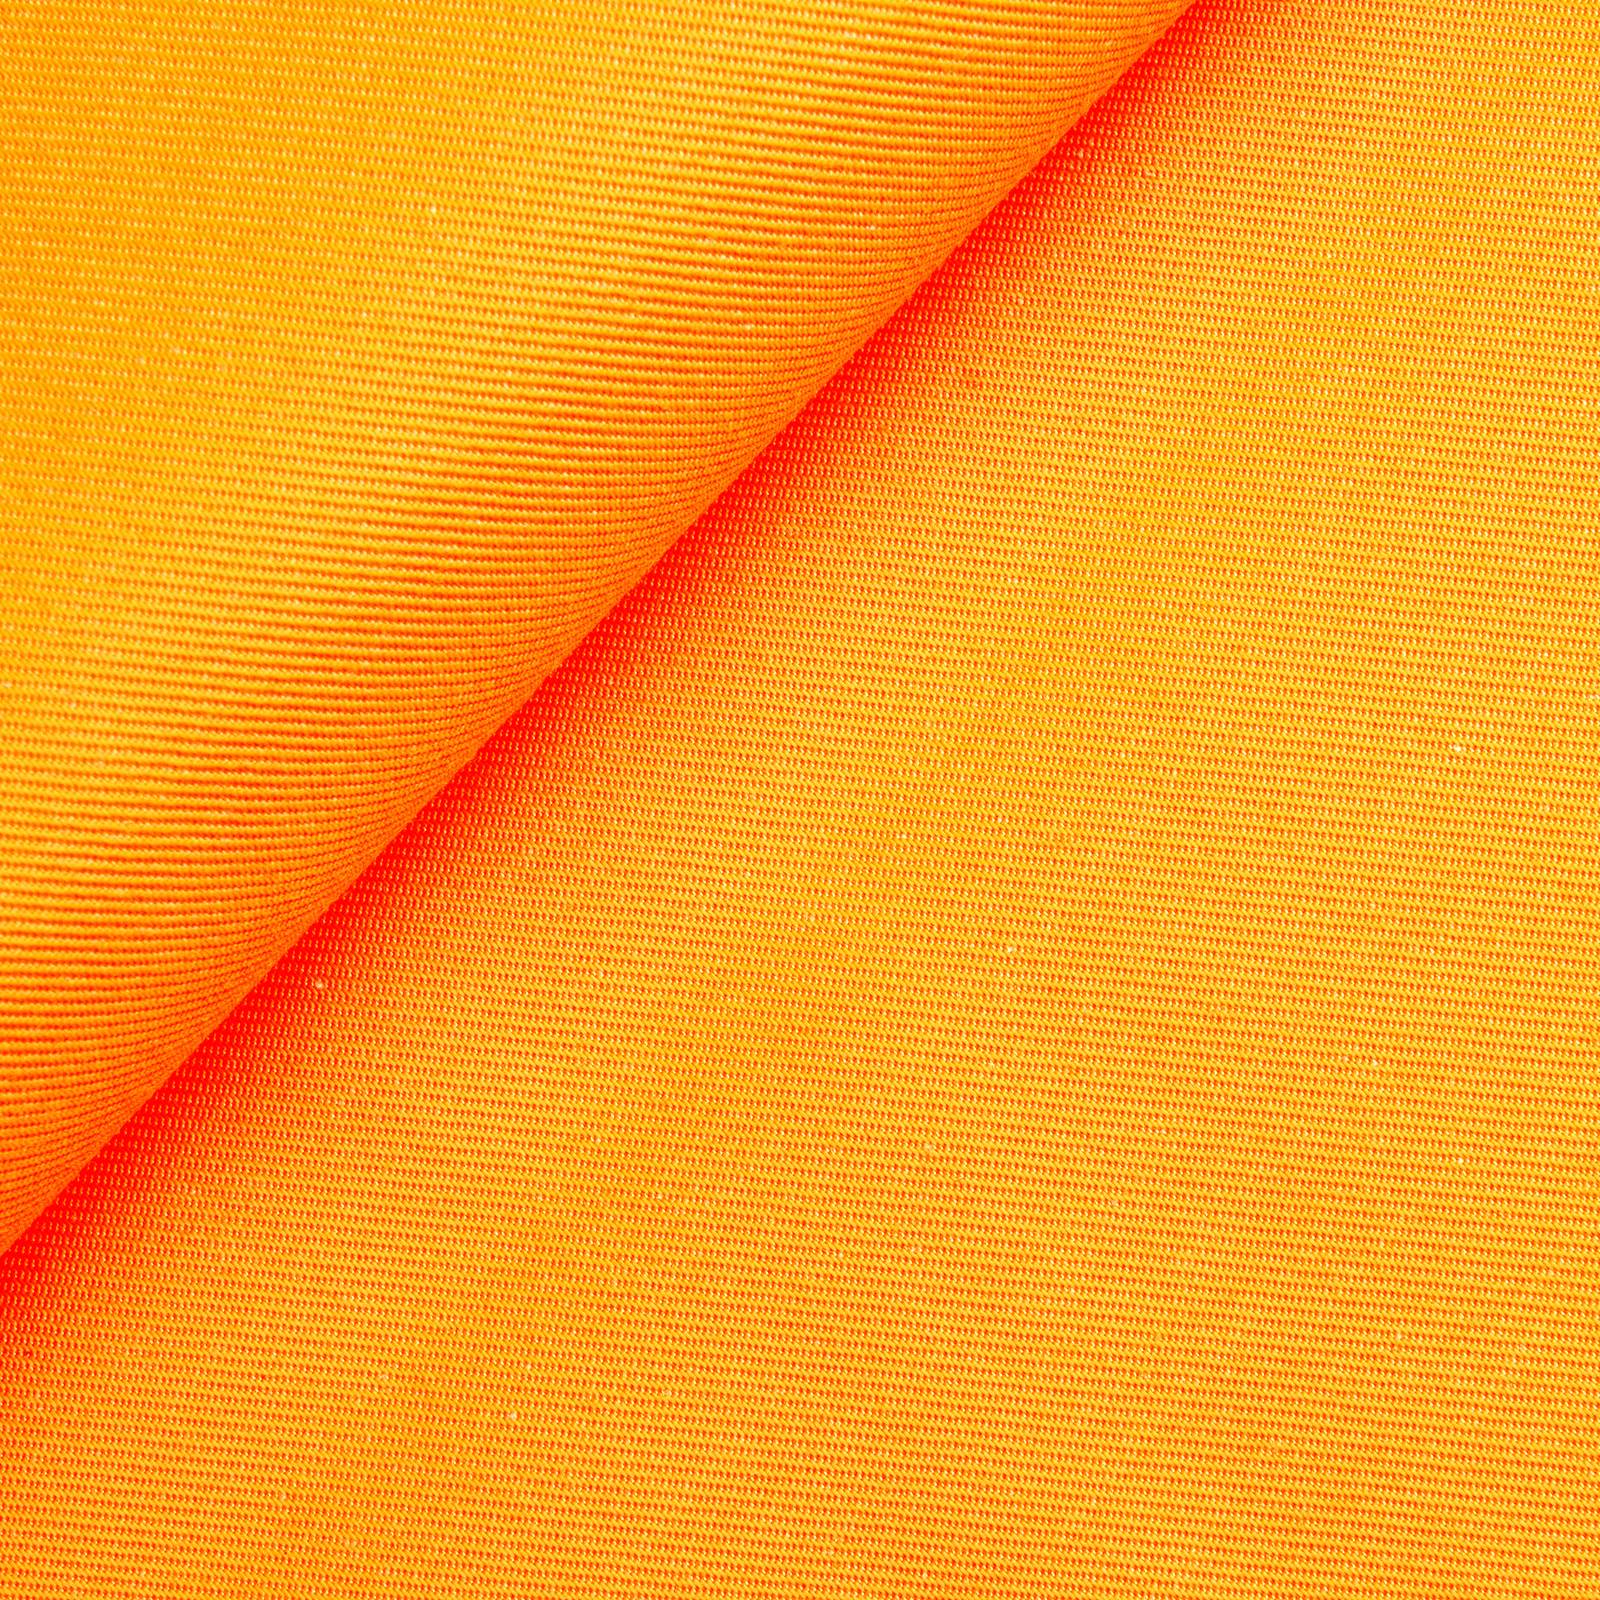 Köpertex - Colori luminosi - Arancione neon